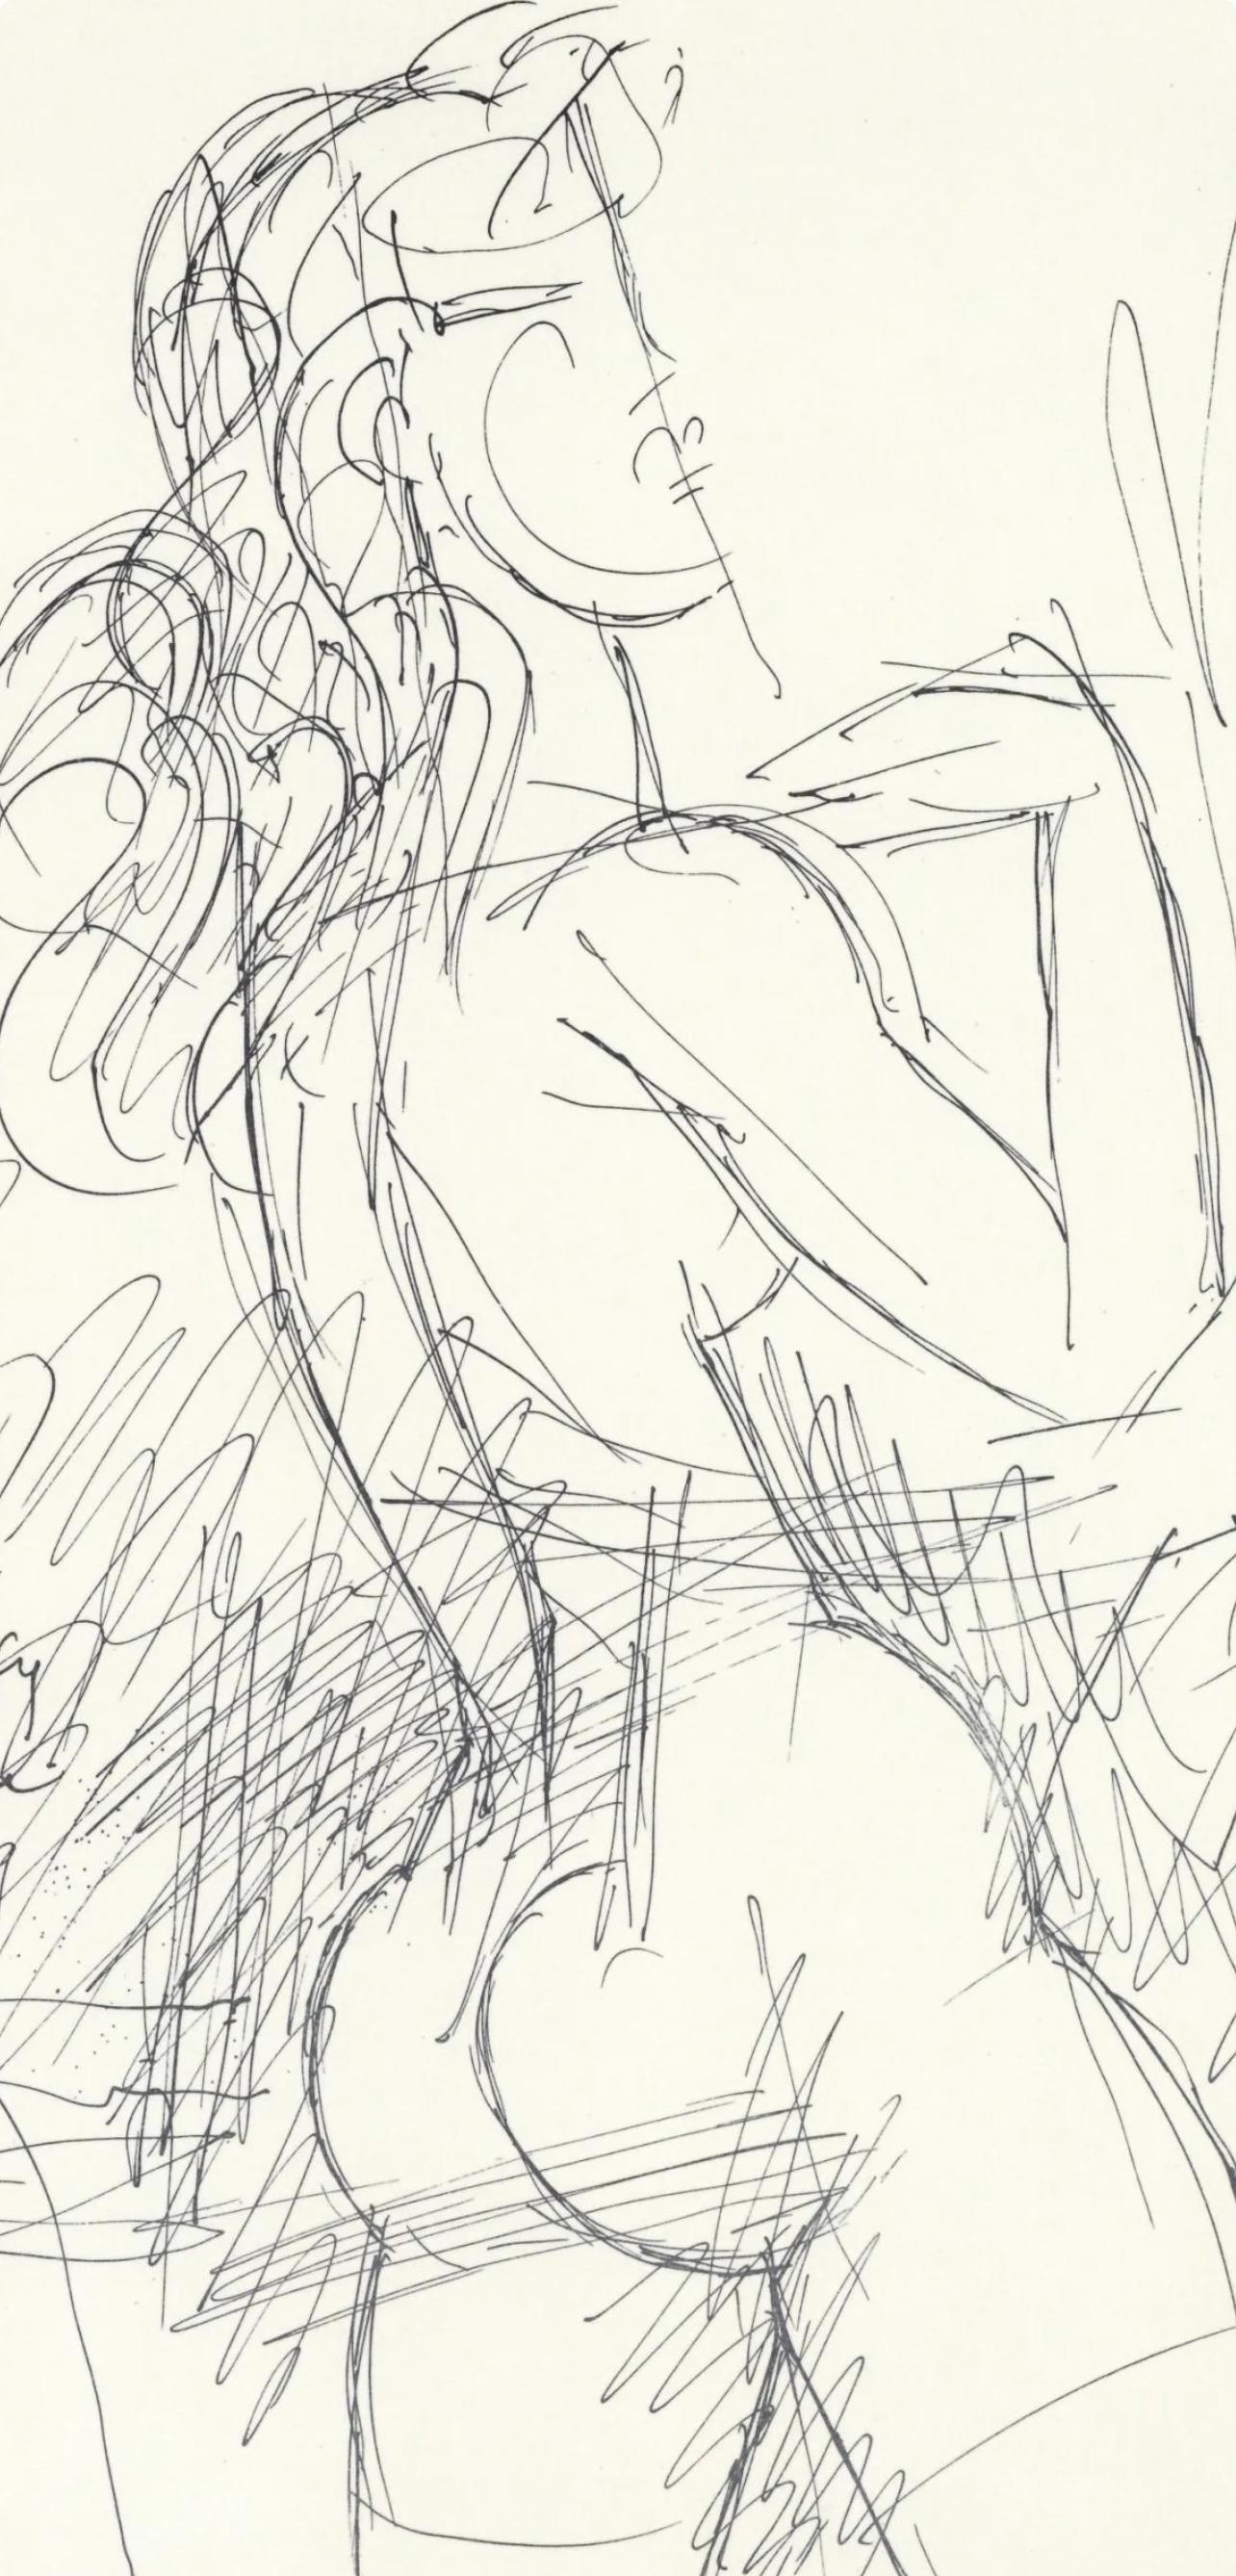 Gromaire, Dessin, Lettre à mon peintre Raoul Dufy (nach) – Print von Marcel Gromaire